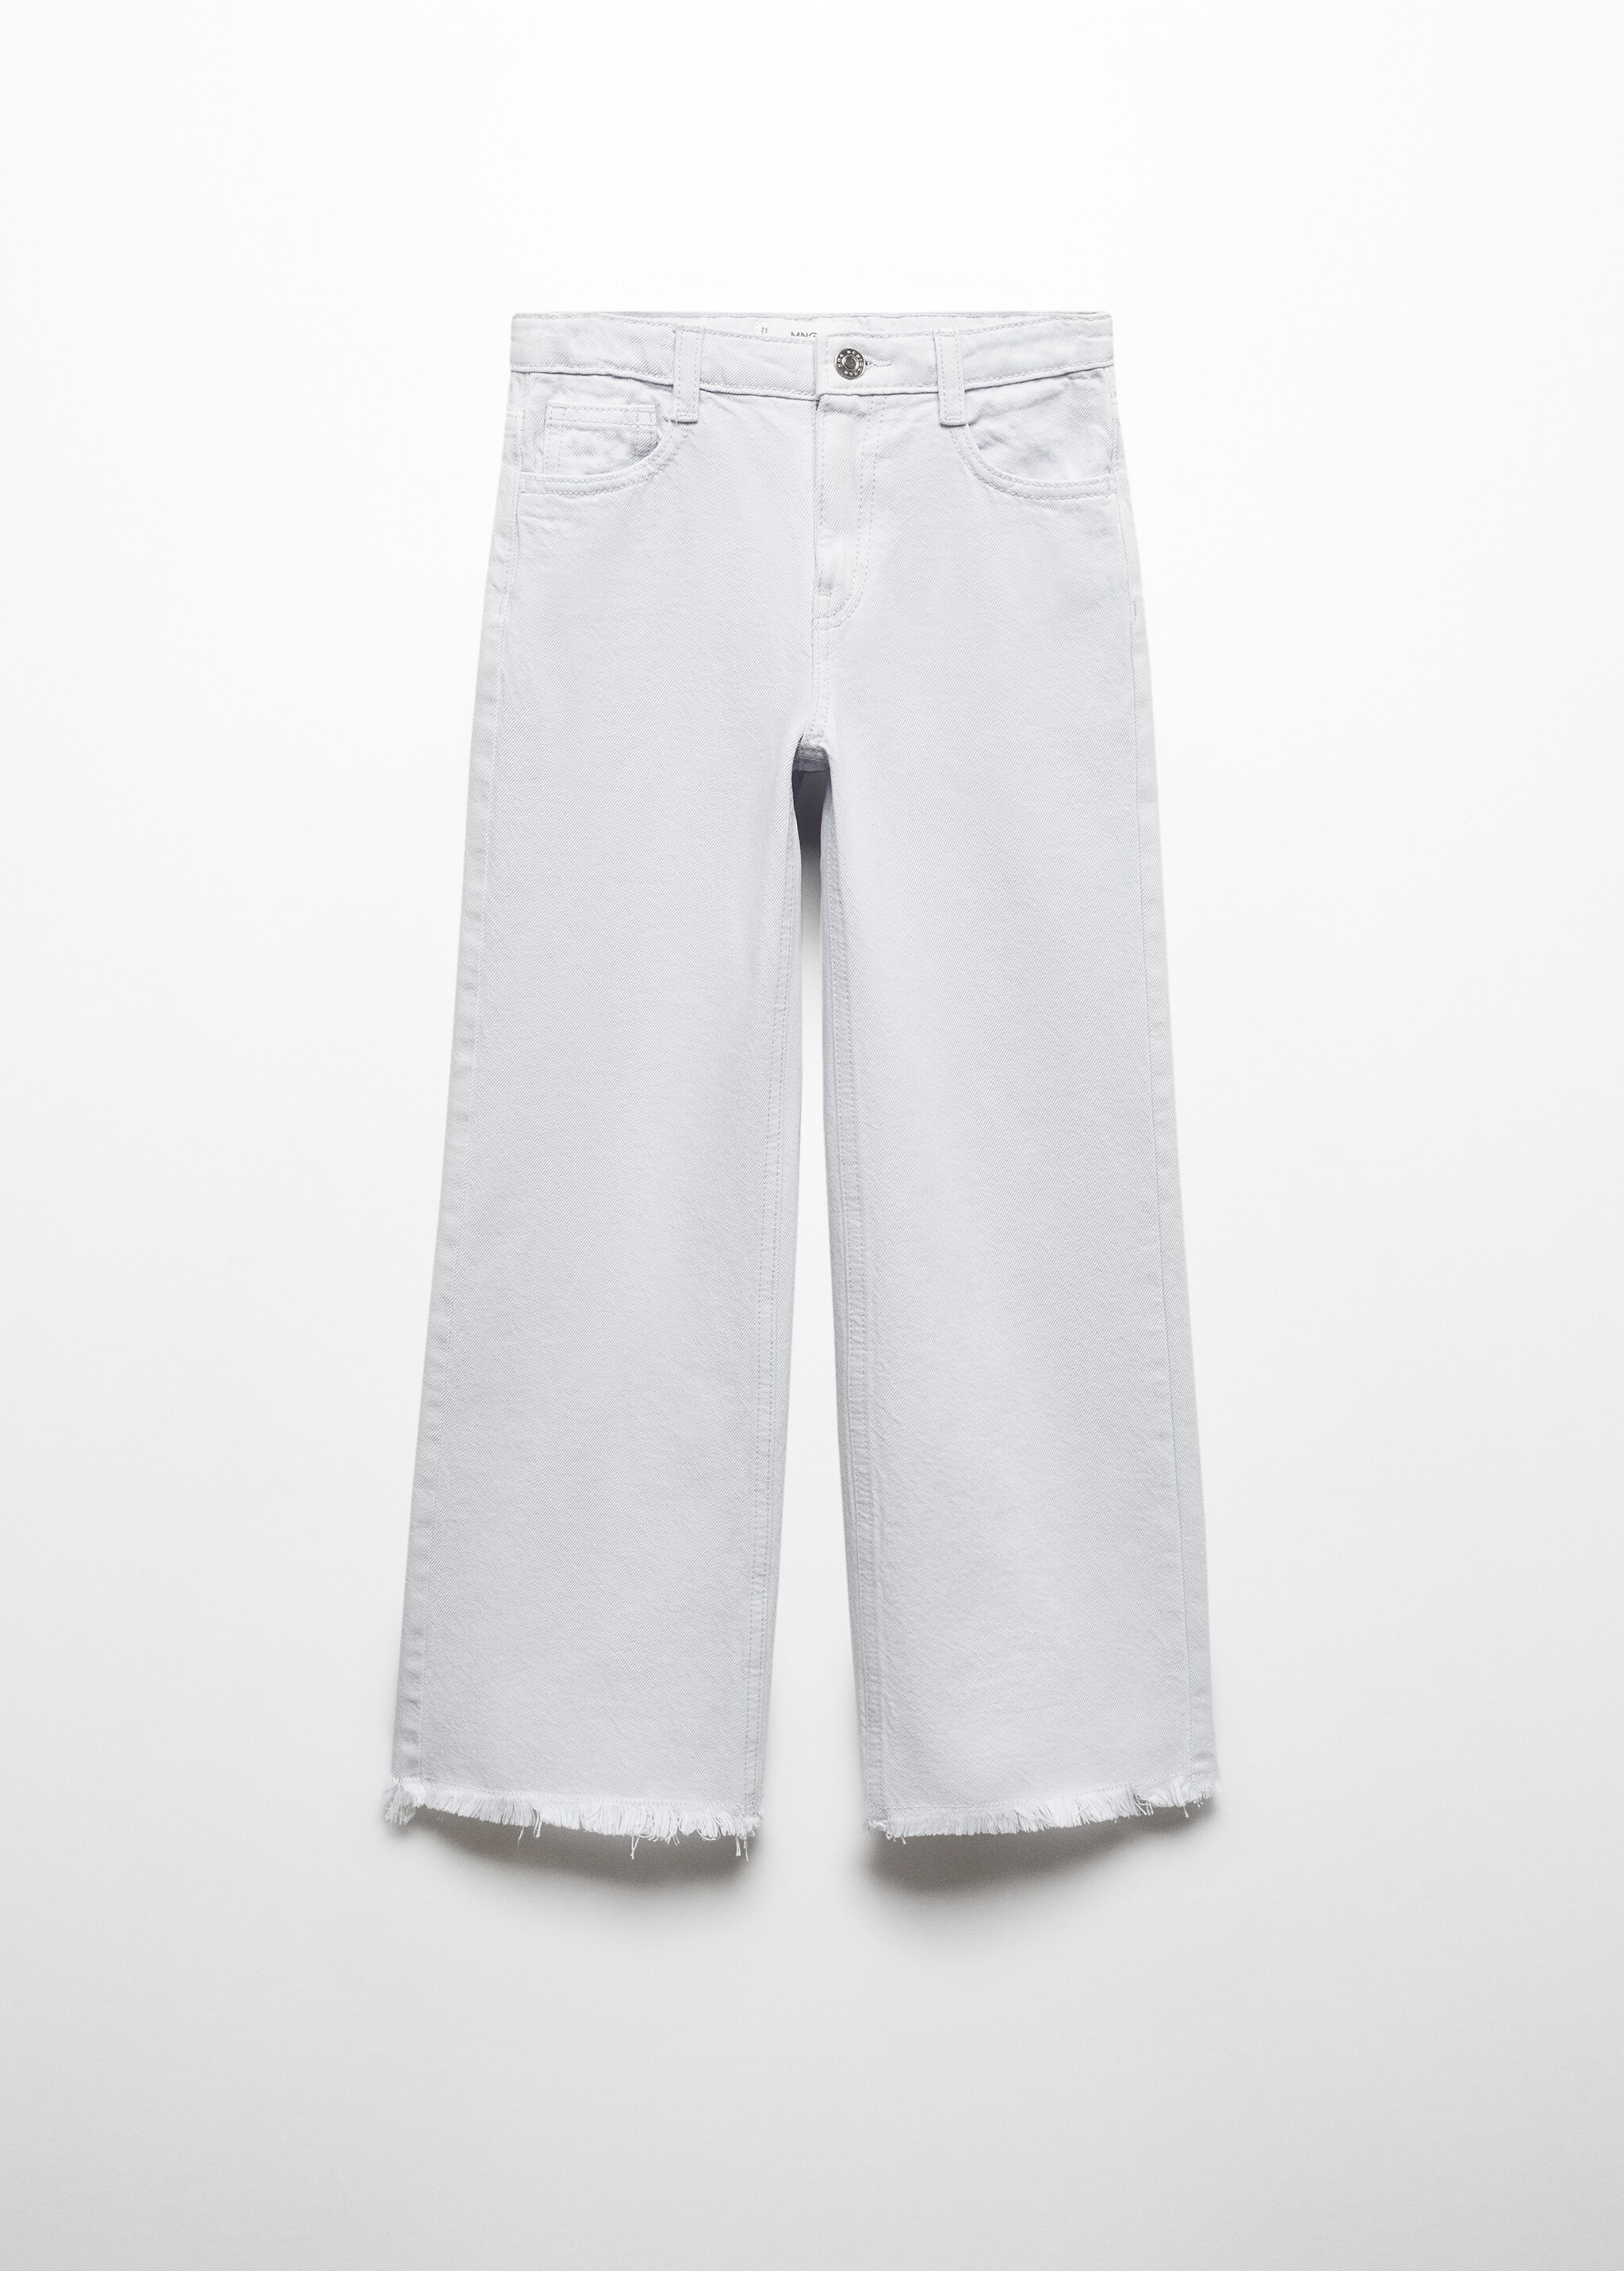 Jeans wideleg bajo deshilachado - Artículo sin modelo